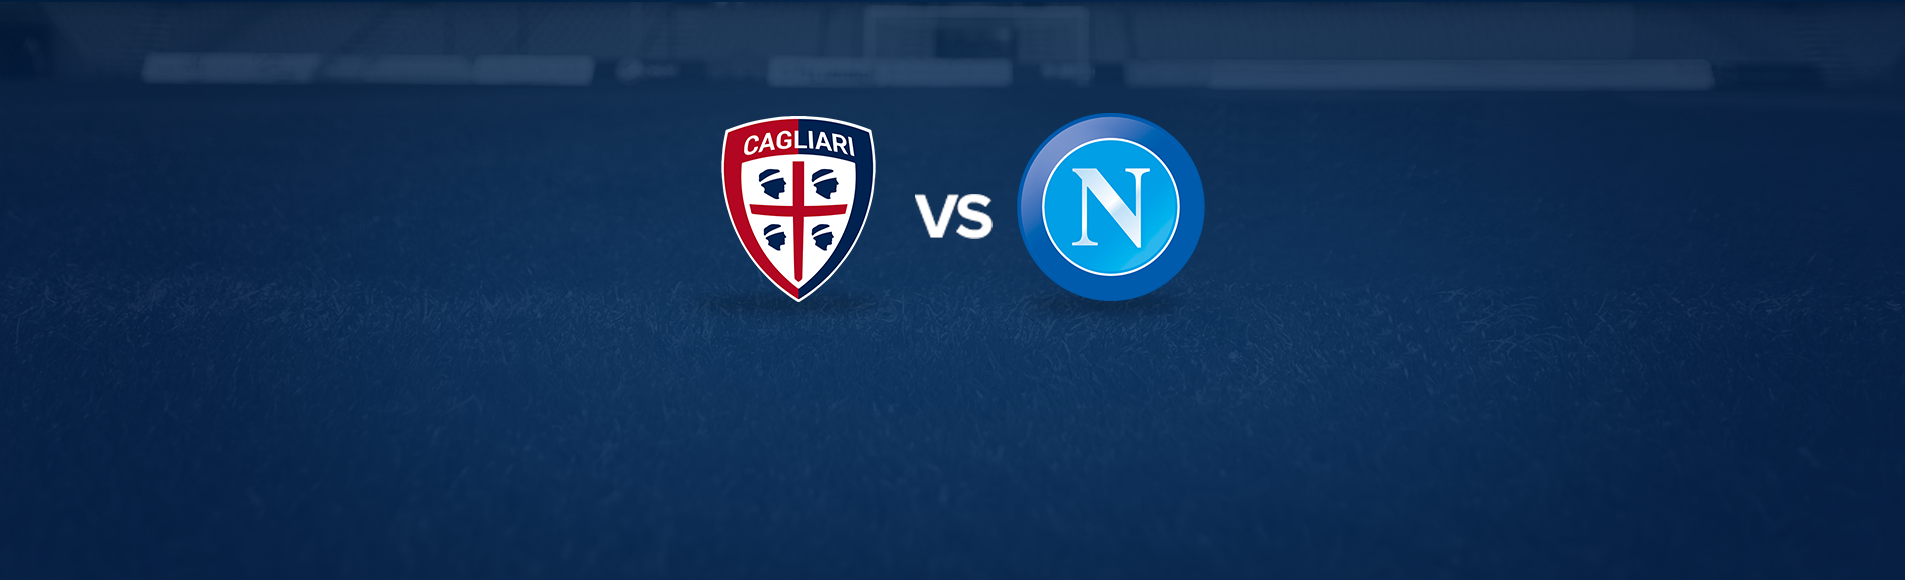 Cagliari-Napoli: dove vedere la partita in tv e diretta streaming - NAPOLI CALCIO